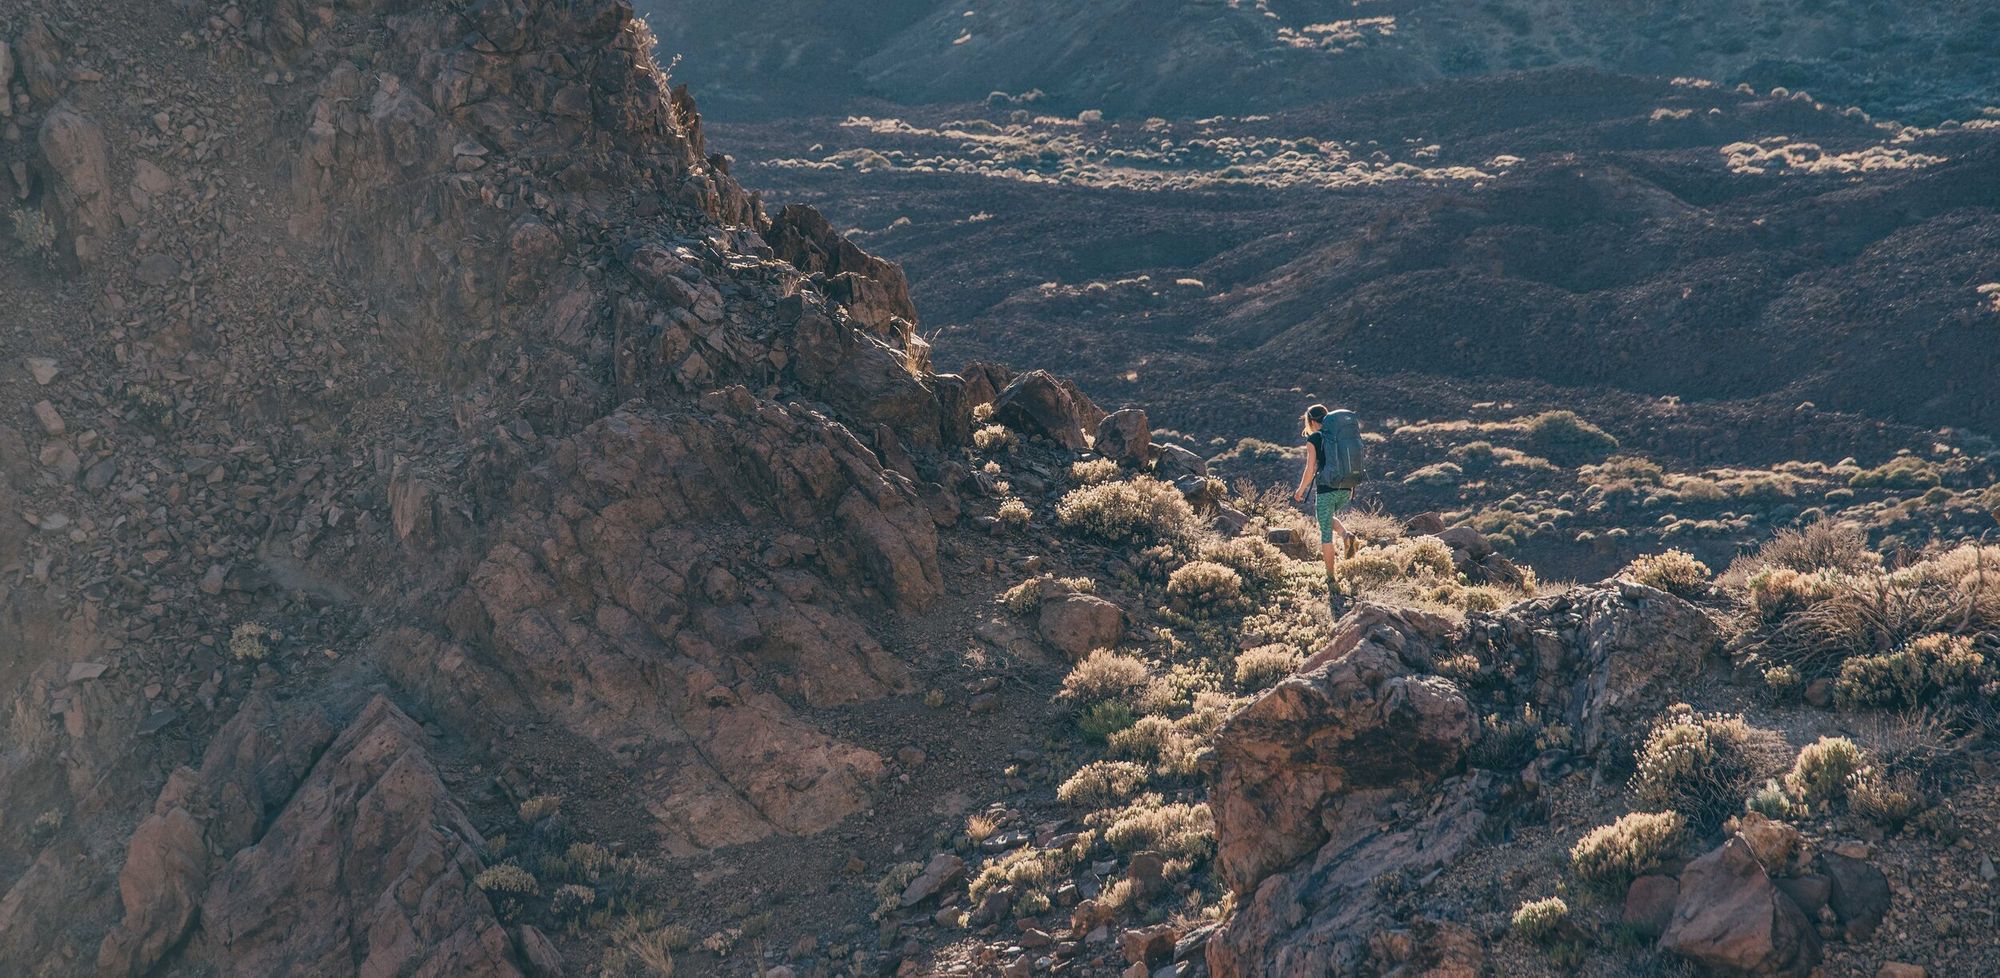 A female hiker walking across an arid landscape.